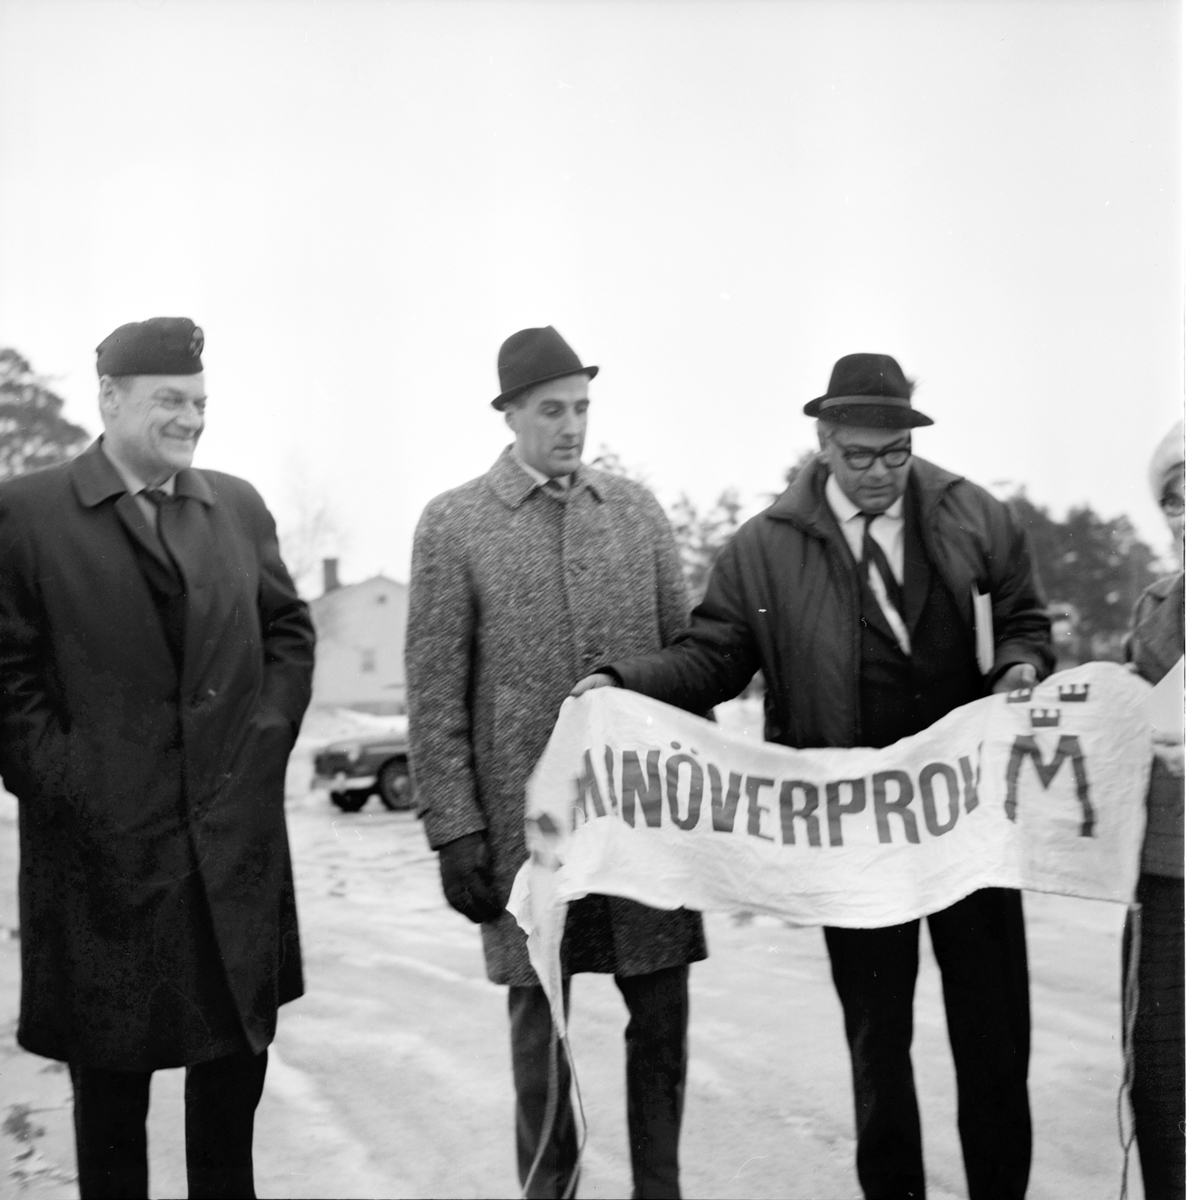 Högertrafikprov,
Kolgården,
6 Mars 1967